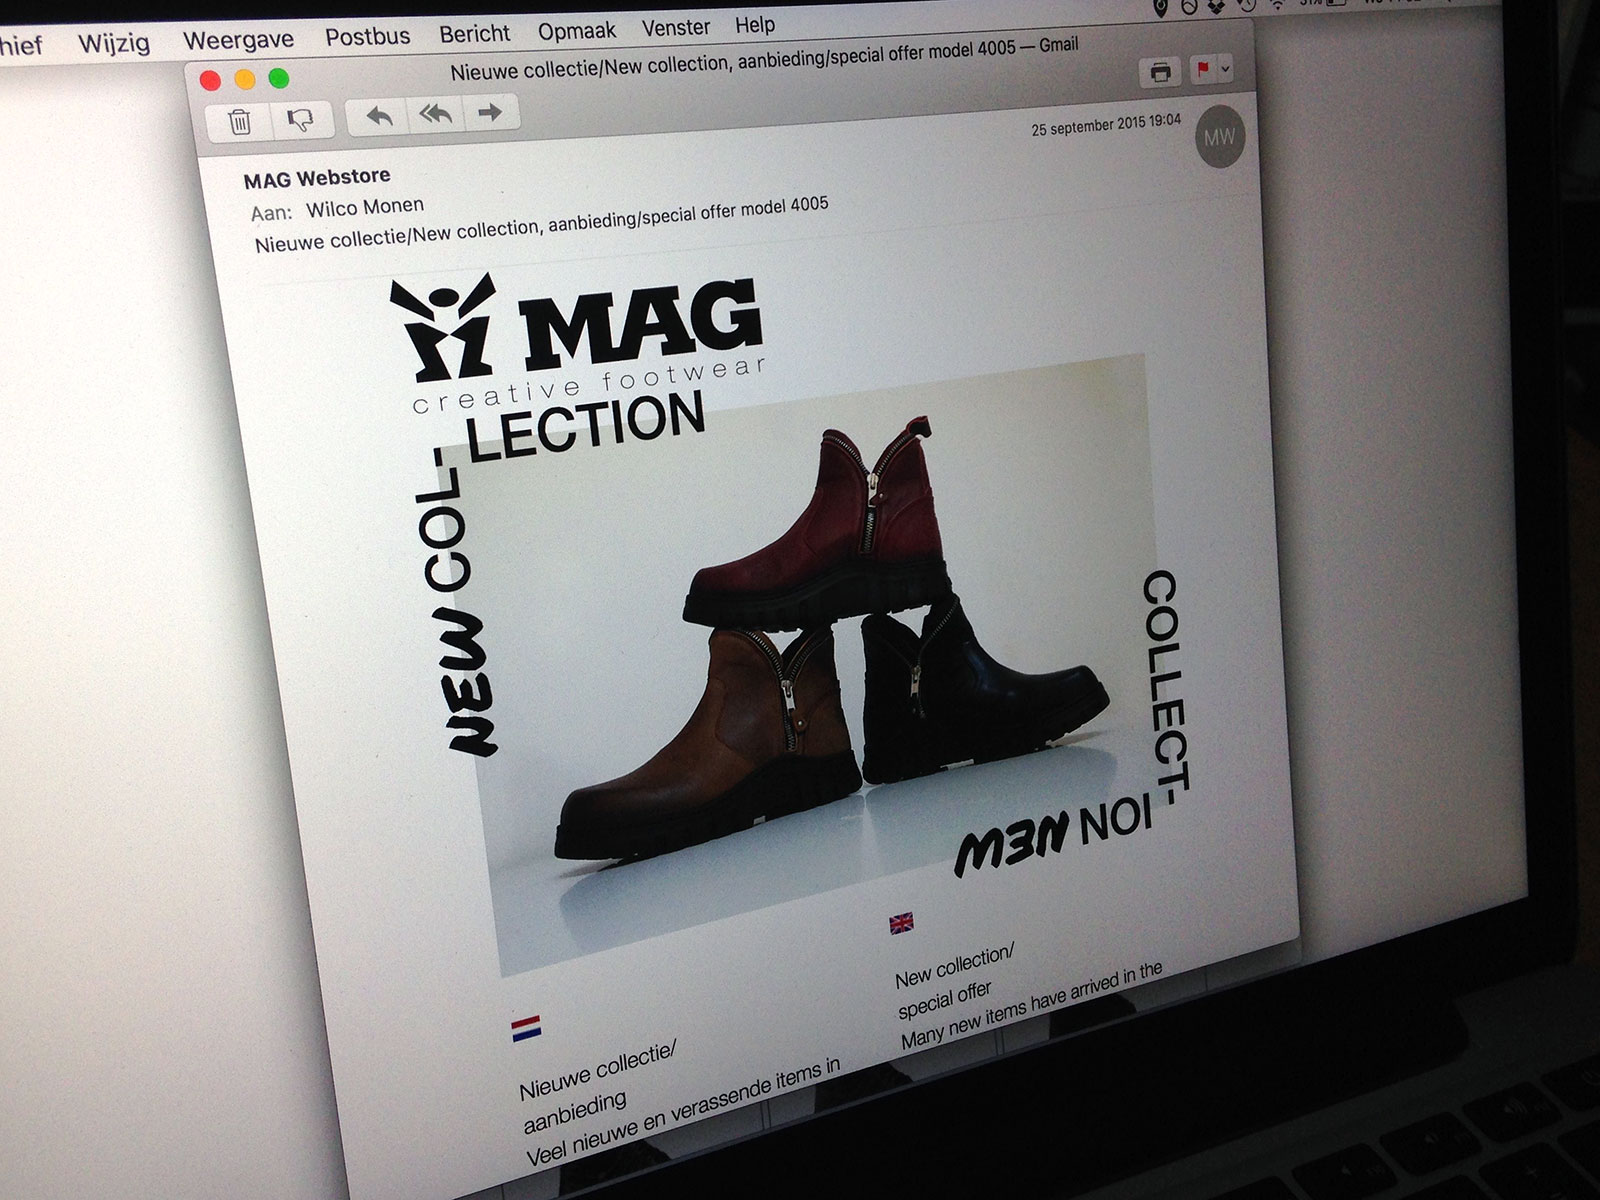 mag creative footwear identity